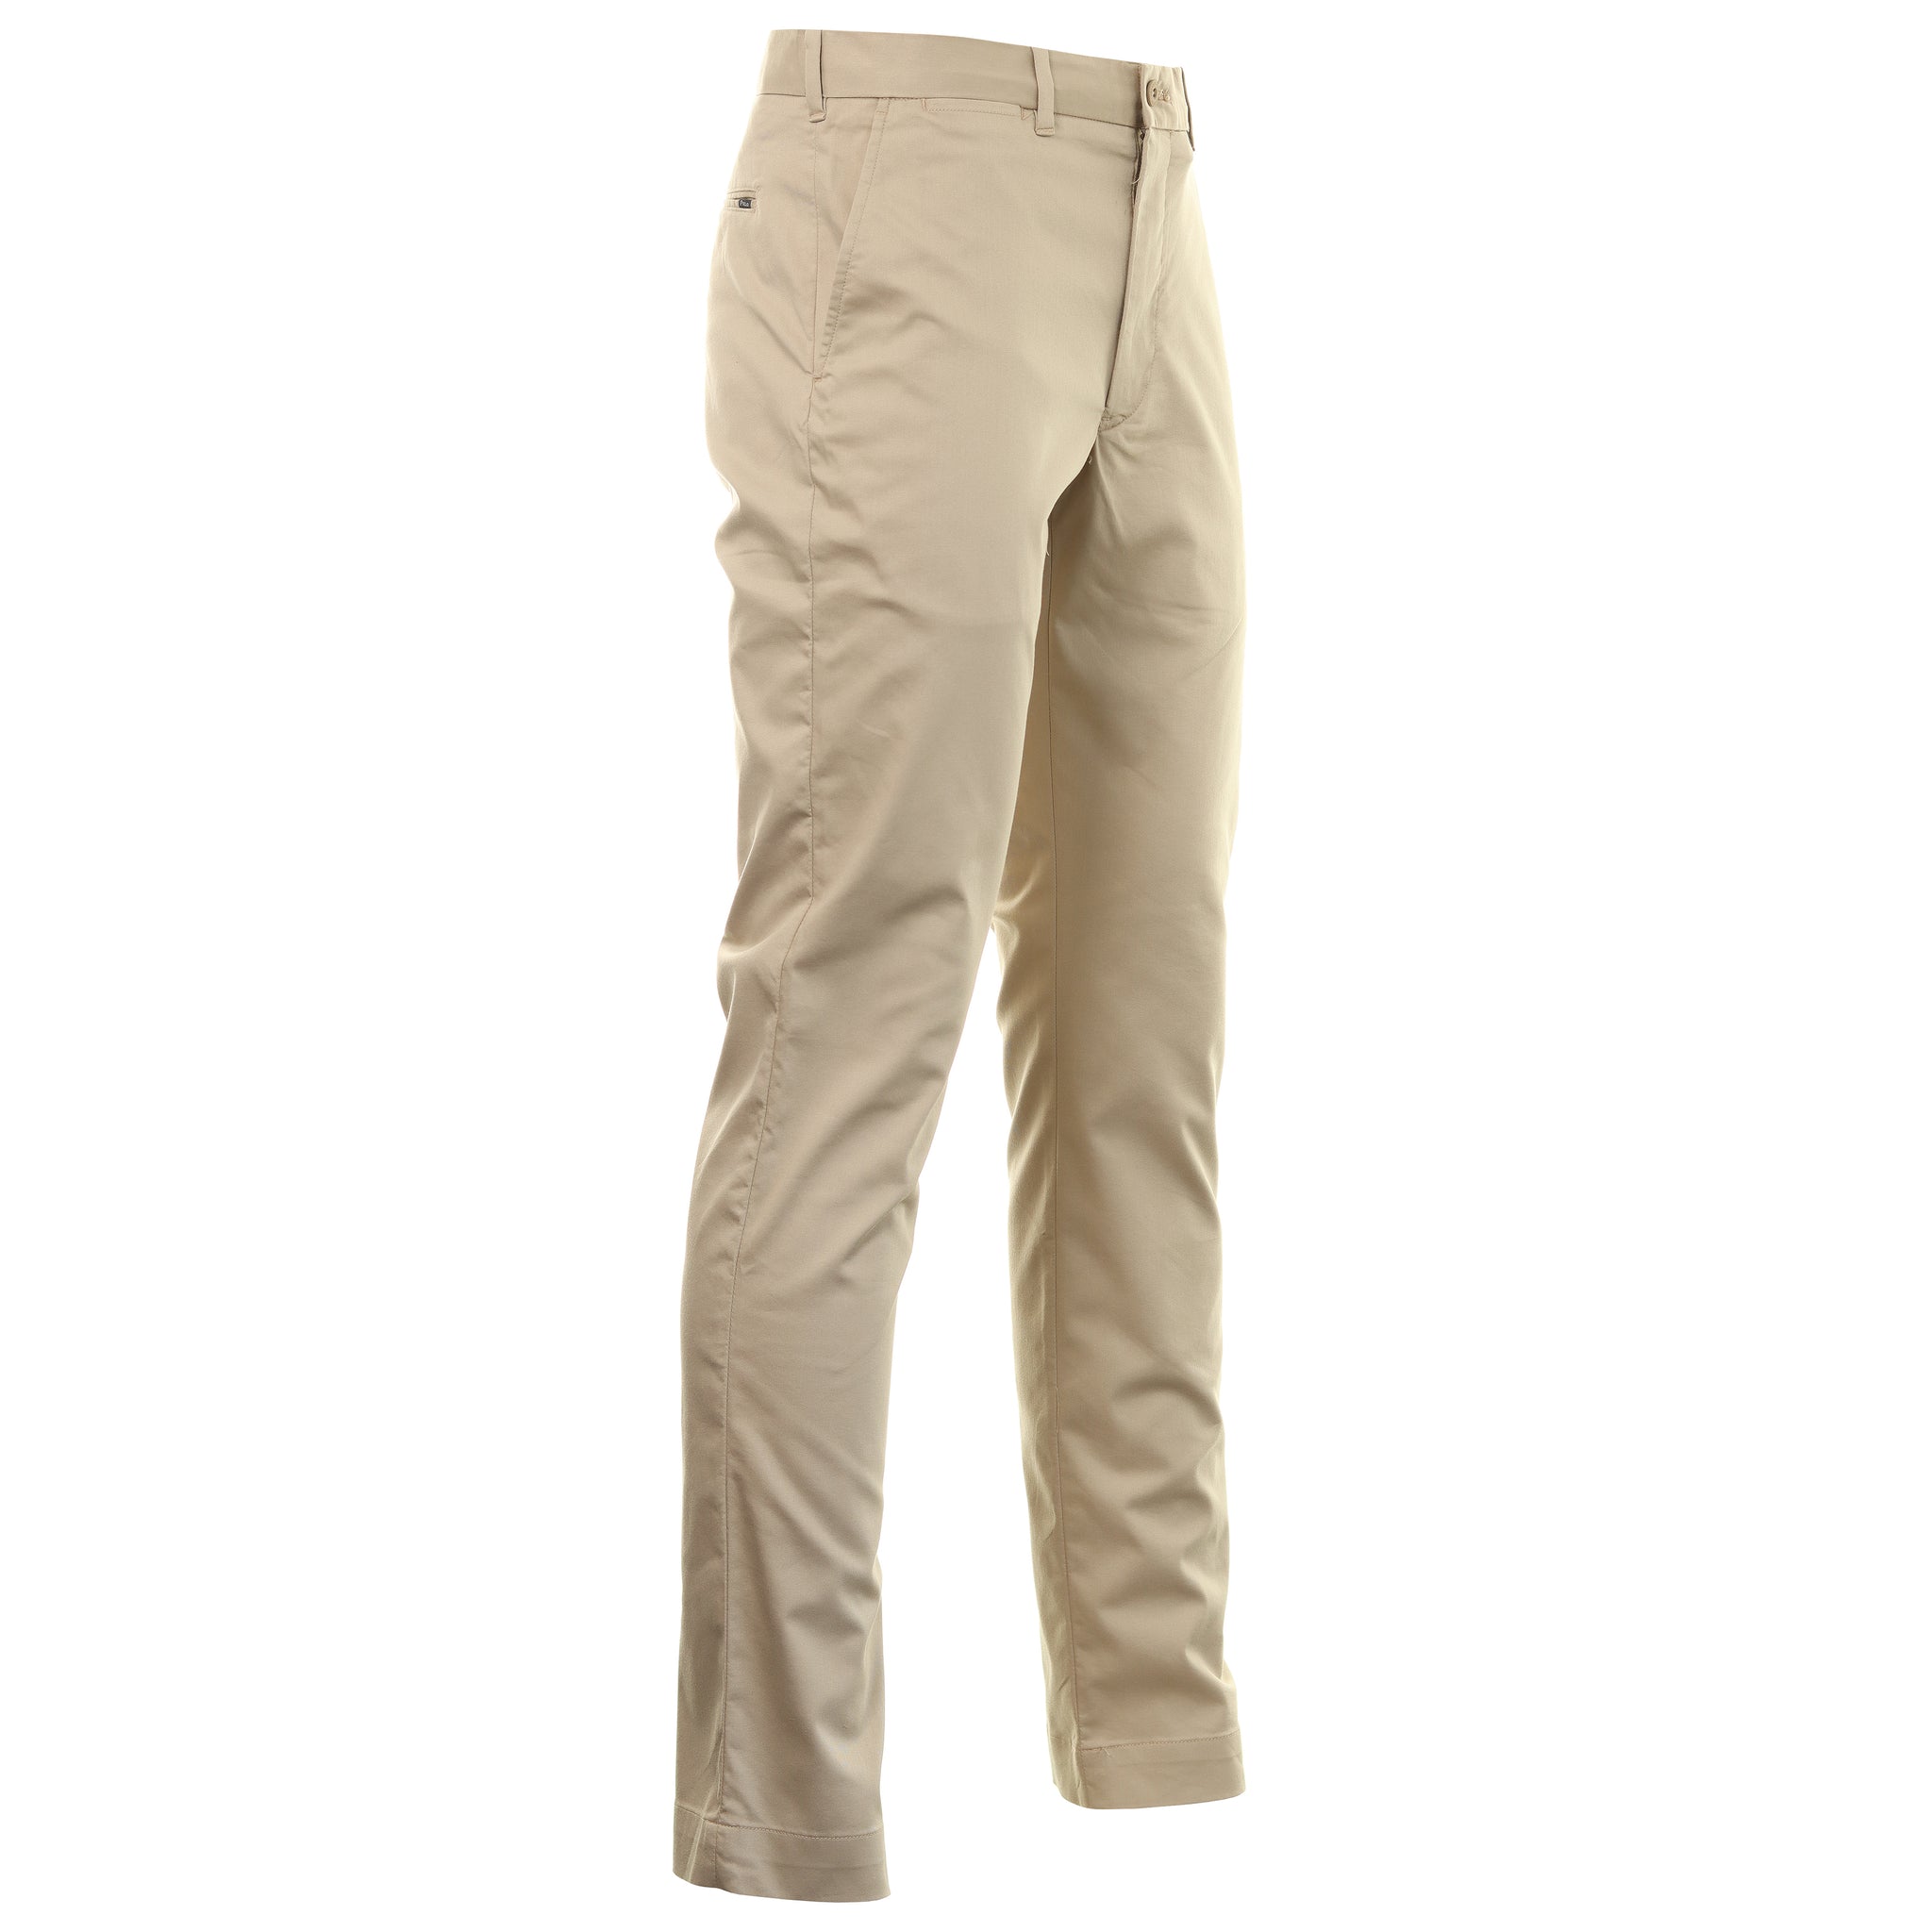 polo-golf-ralph-lauren-cotton-slim-fit-trousers-710880711-classic-khaki-002